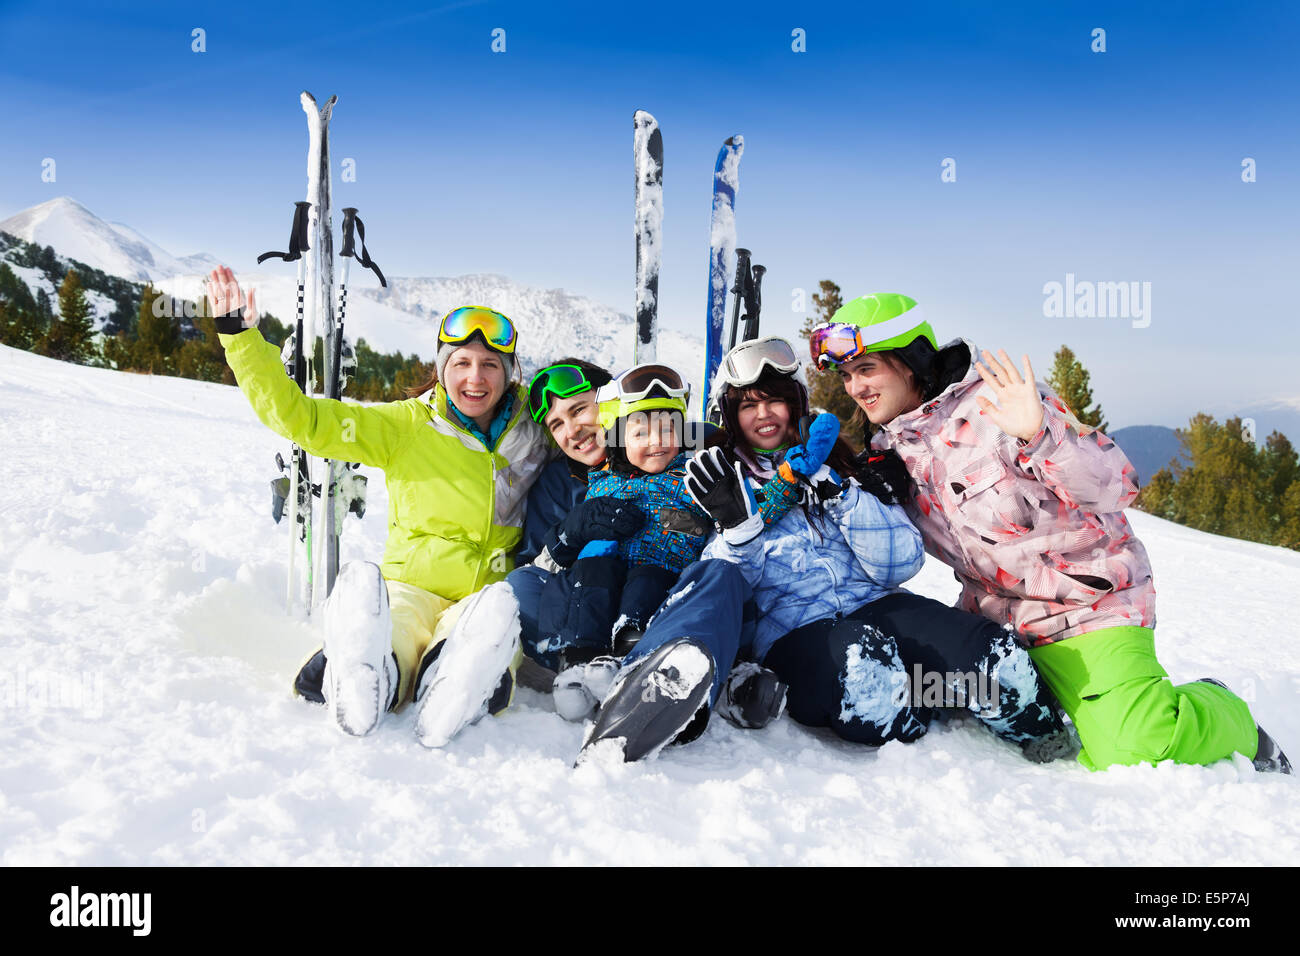 After skiing. Семья на горнолыжном курорте. Семья на лыжах. Горнолыжный курорт всей семьей.